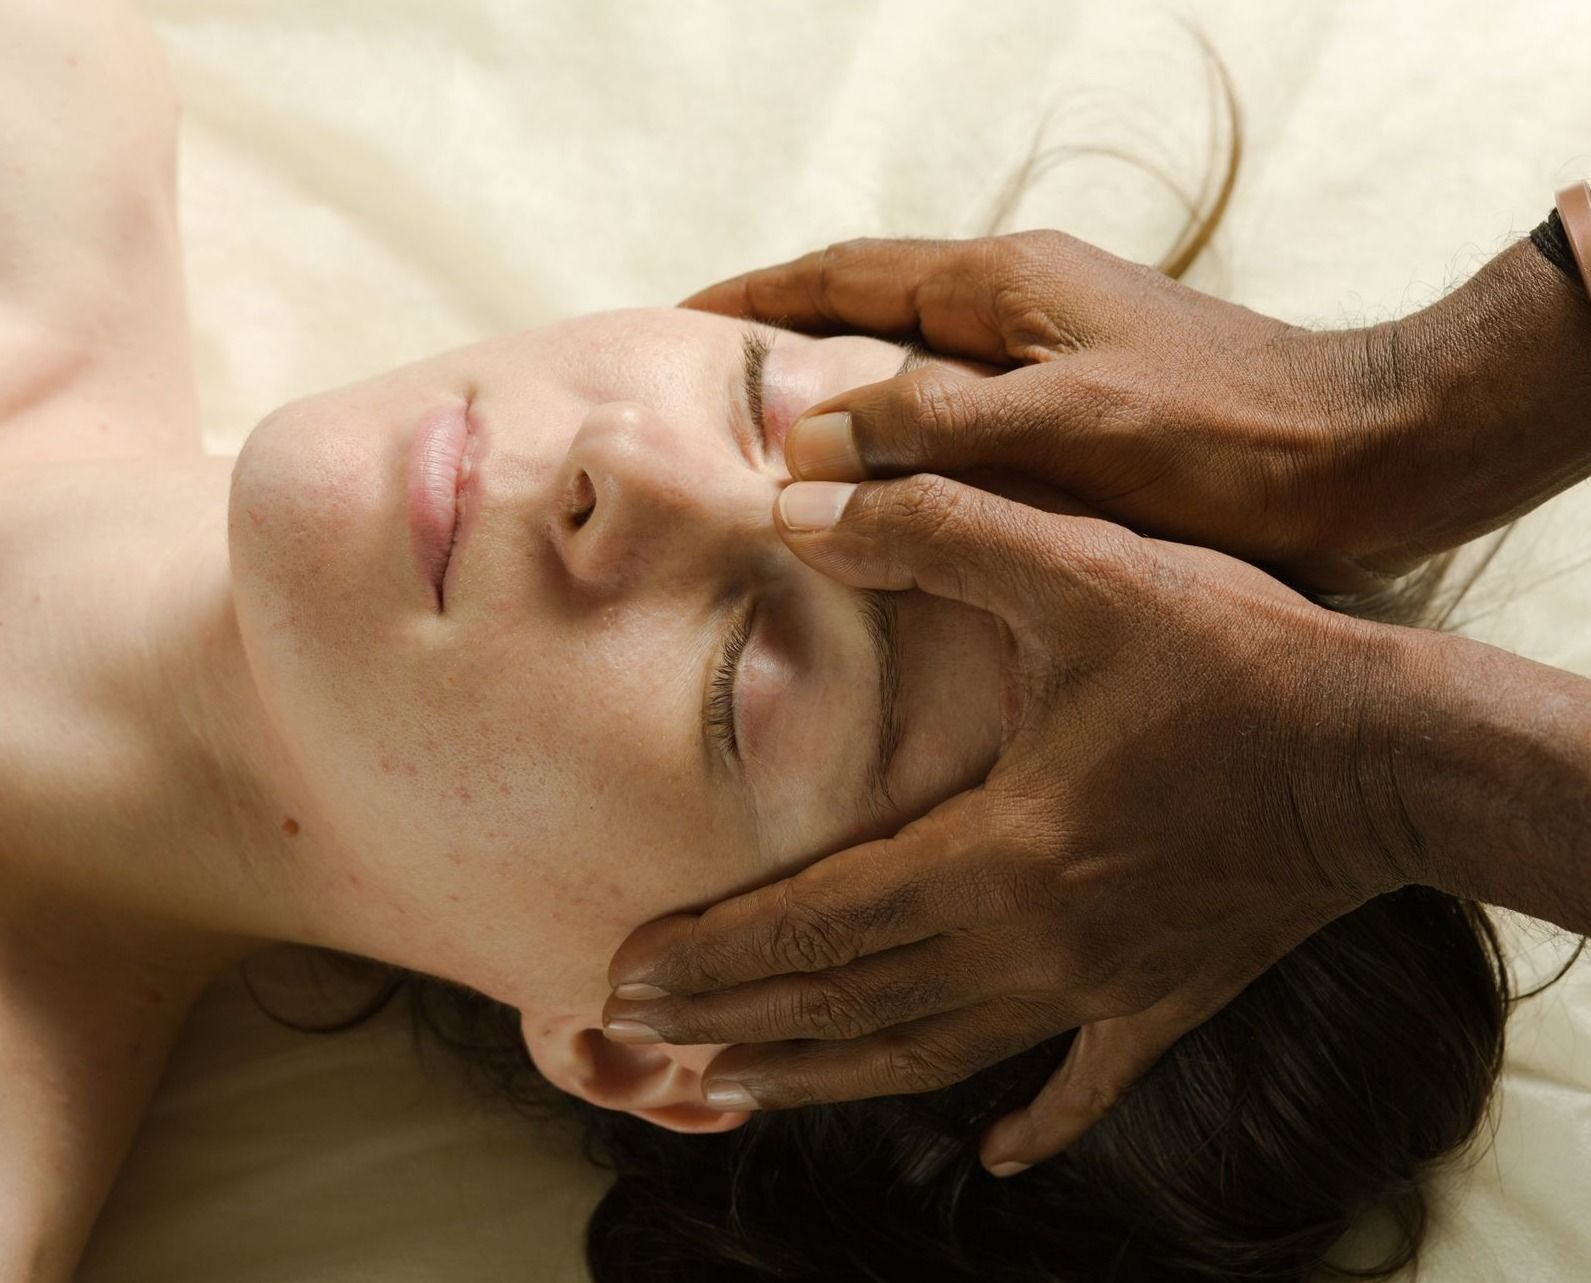 Марма-терапия области лица, головы и шеи

очистит наиважнейшие каналы
и активизирует точки Мармы